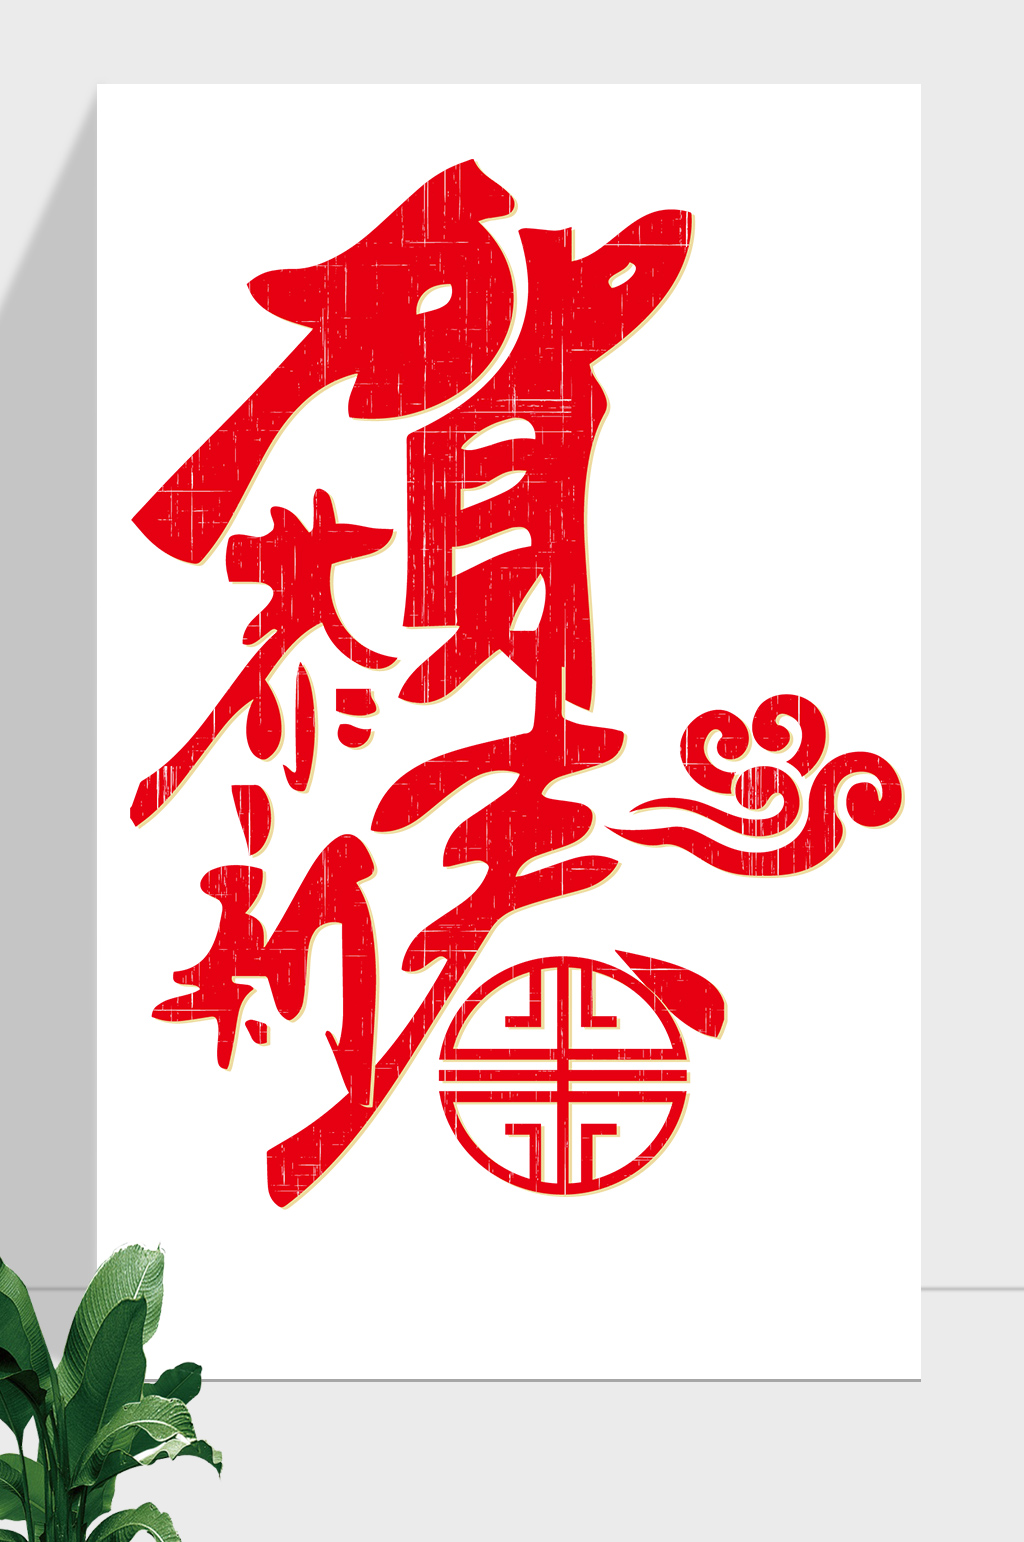 春节文字清晰图片